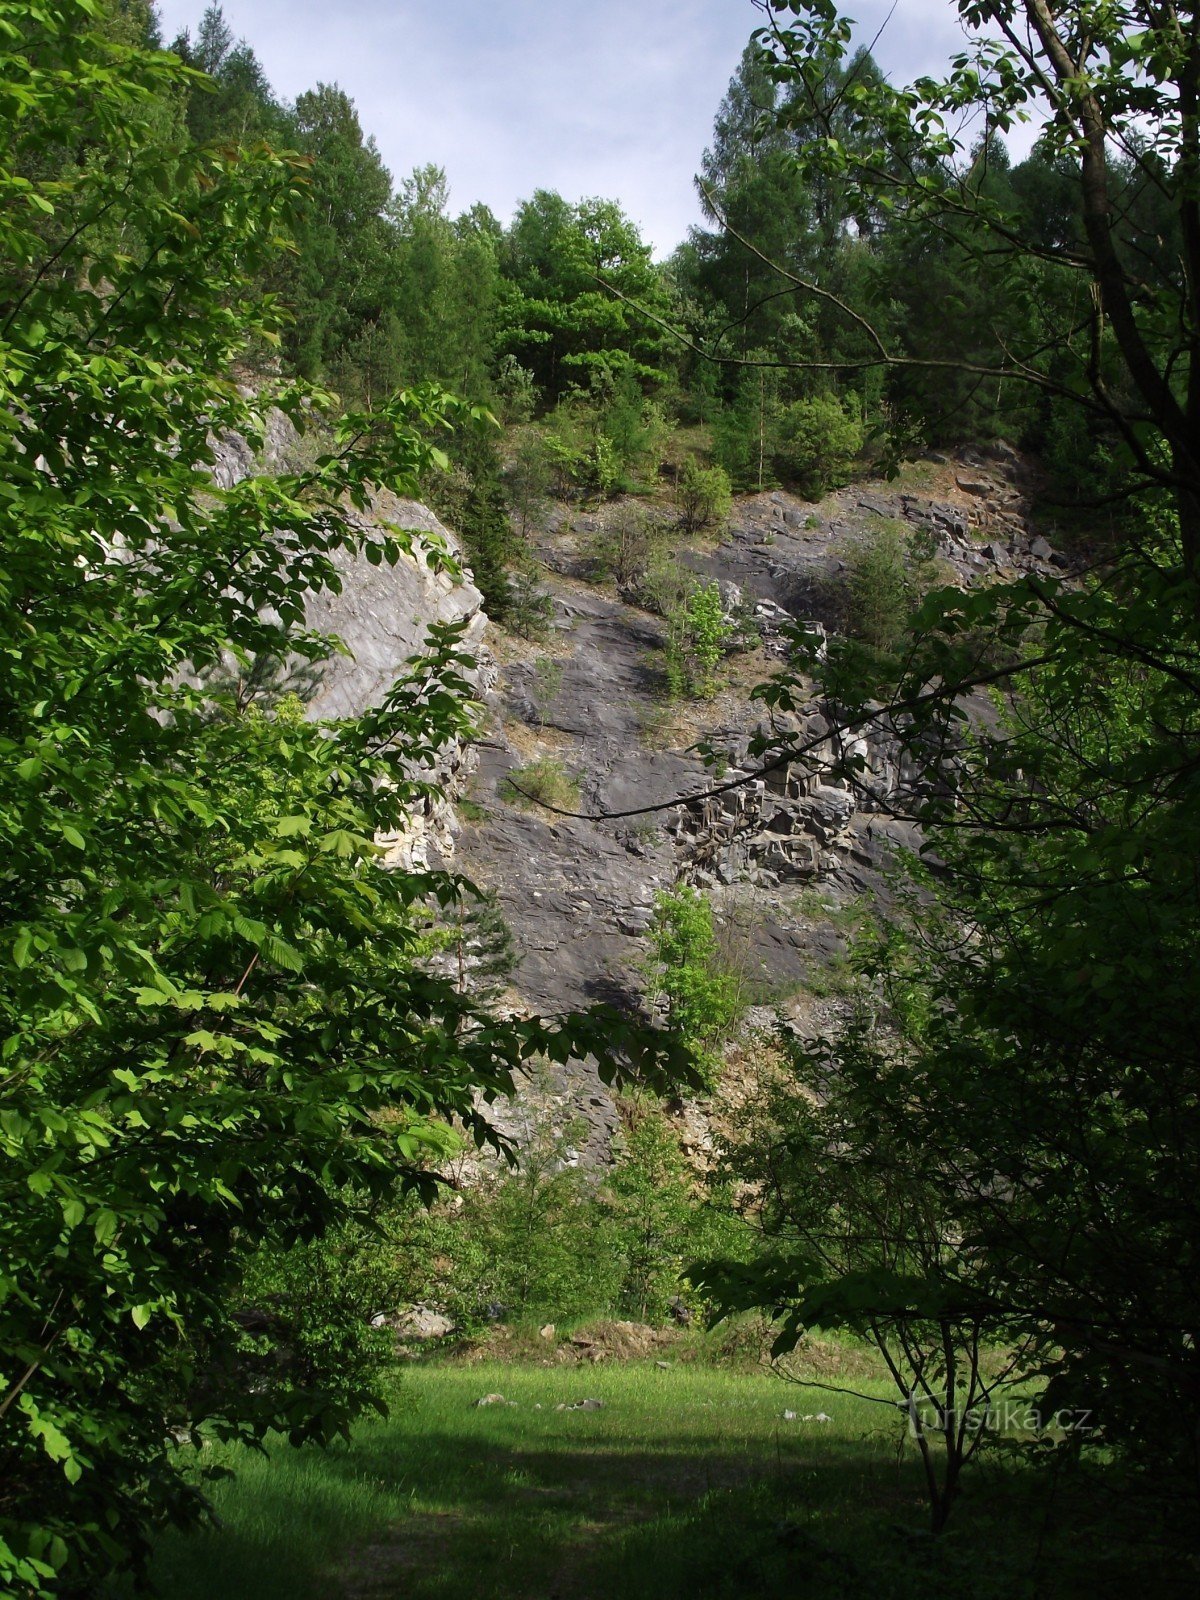 Bohdíkovské skály 2 or the hockey road to the limestone quarry